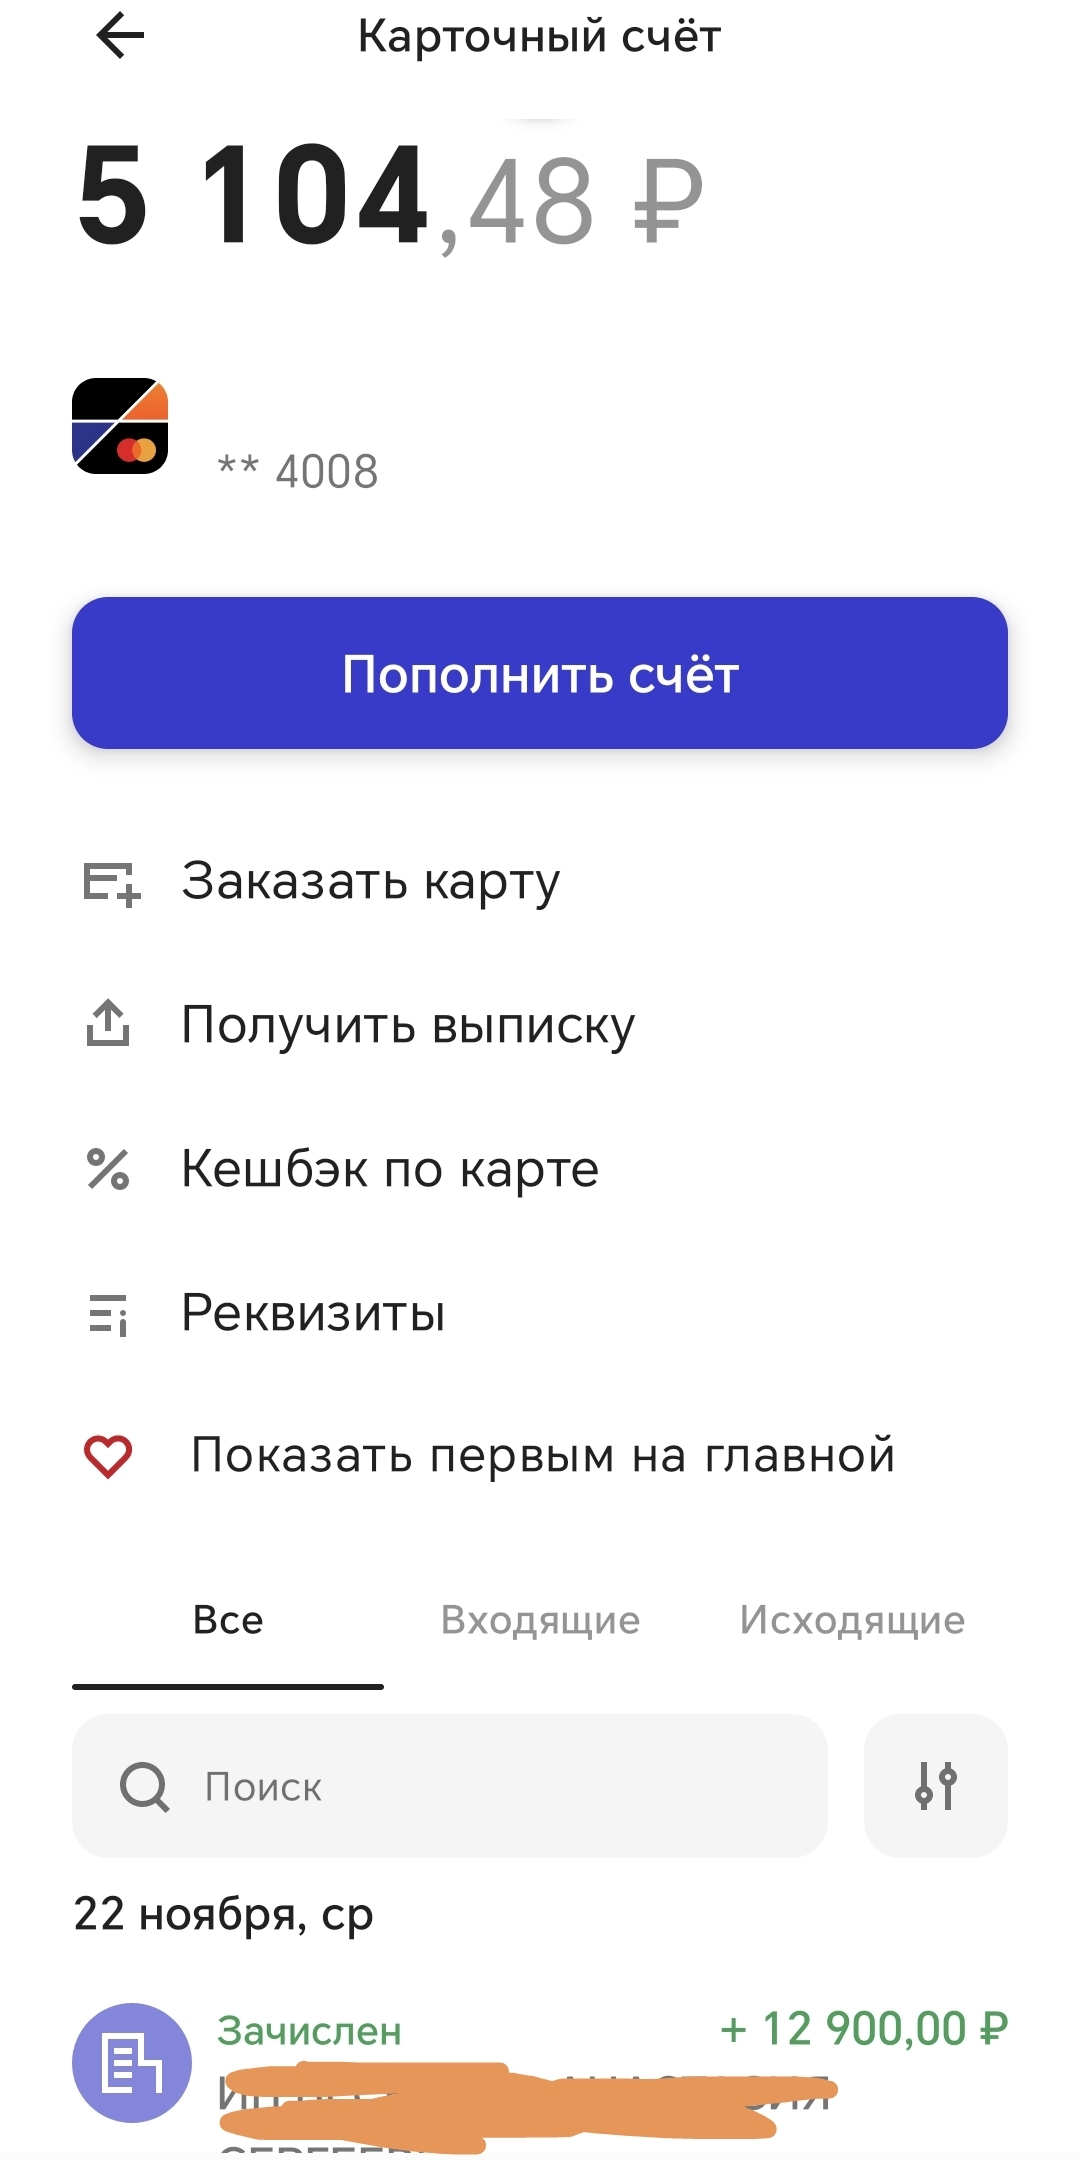 Не могу войти в личный кабинет ПСБ - ответы экспертов на aikimaster.ru